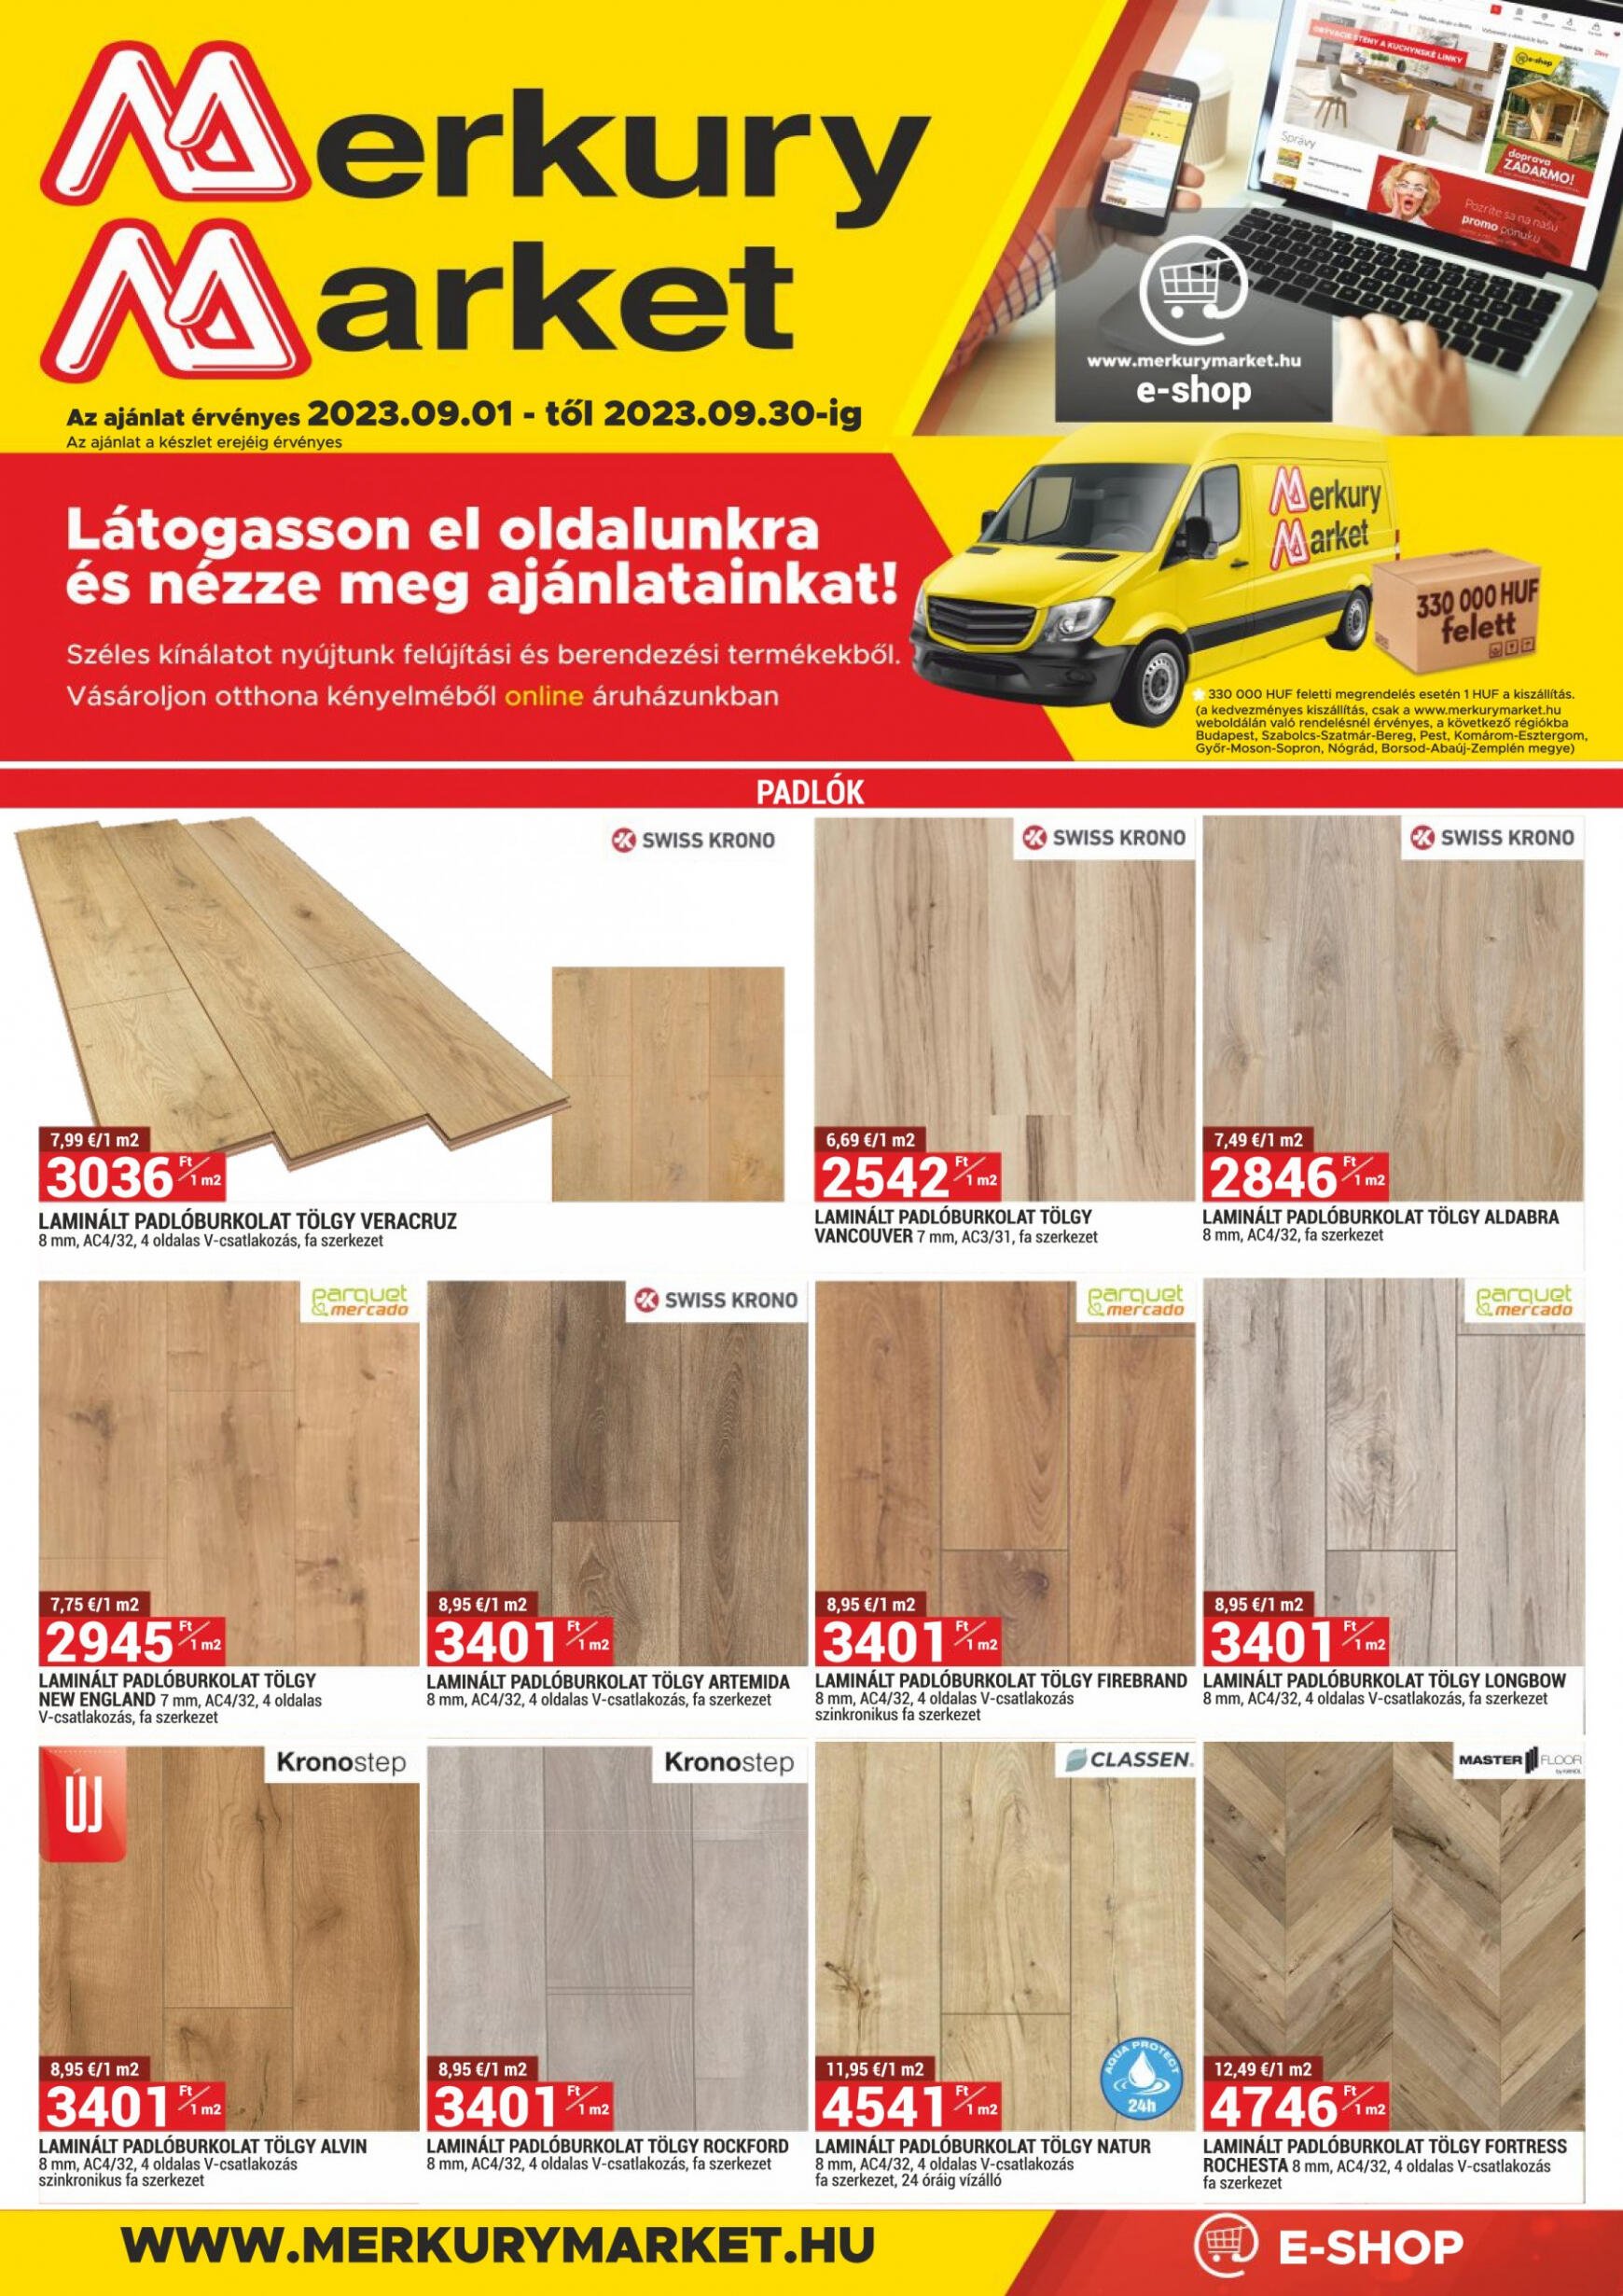 merkury-market - Merkury Market újság péntektől 09.01. - page: 1